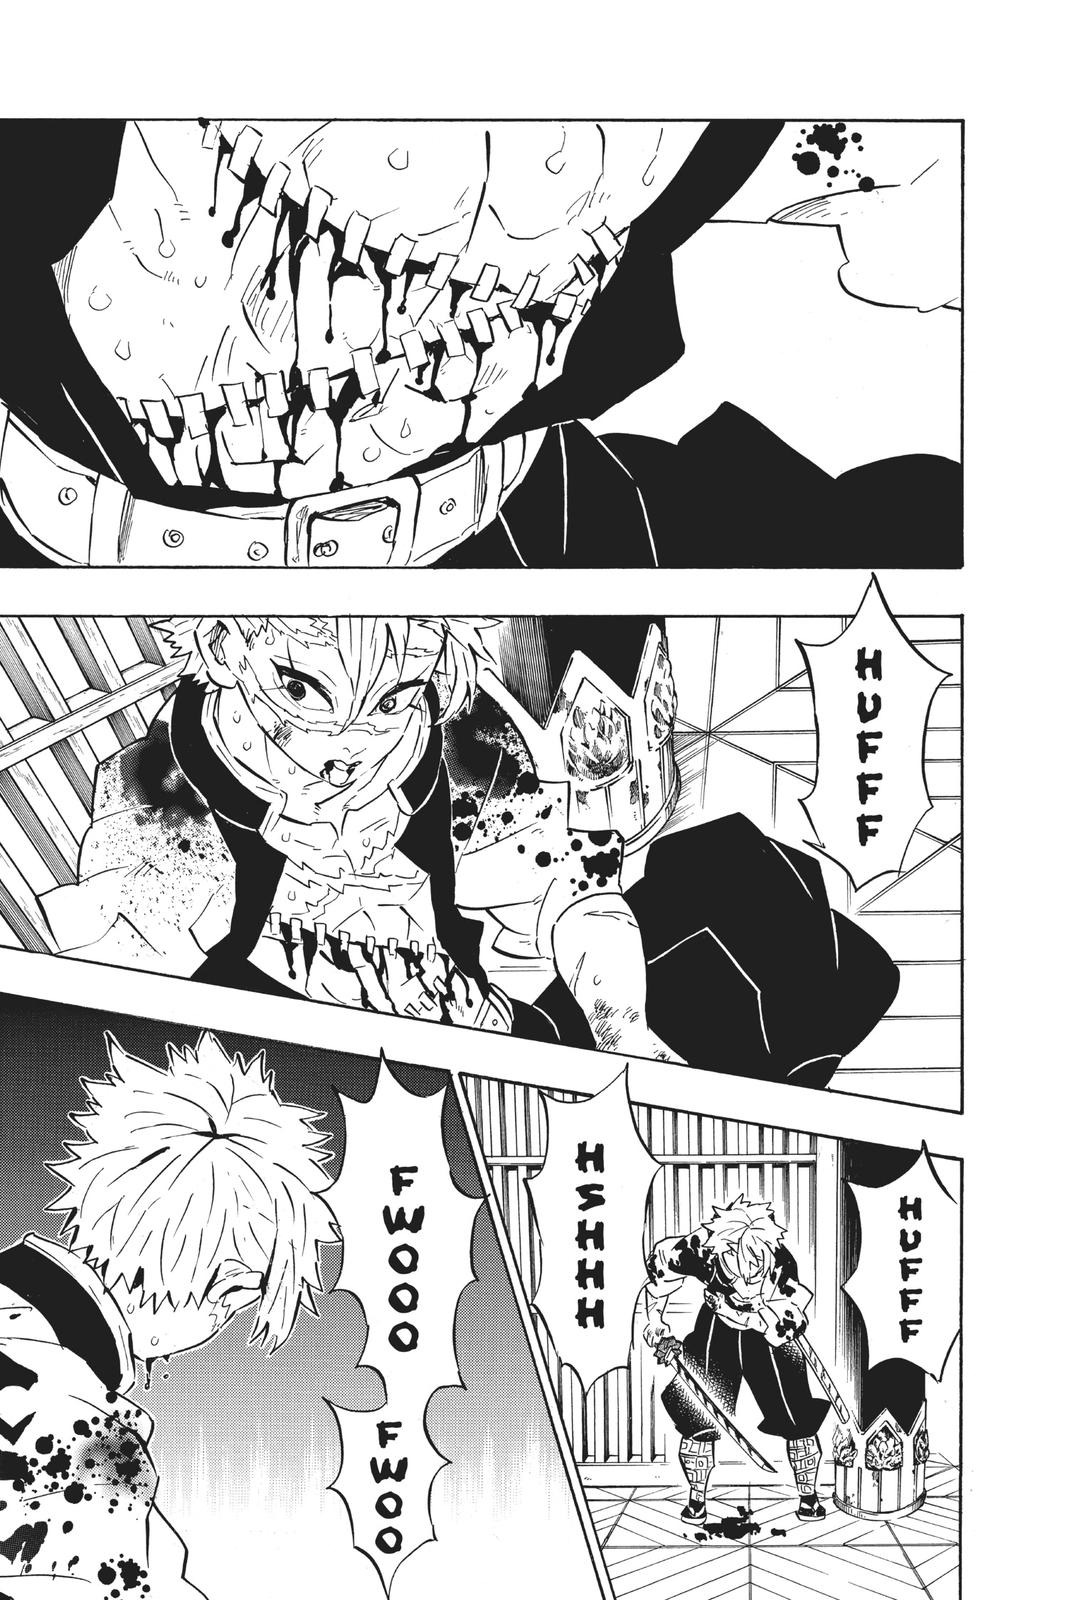 Demon Slayer Manga Manga Chapter - 170 - image 5